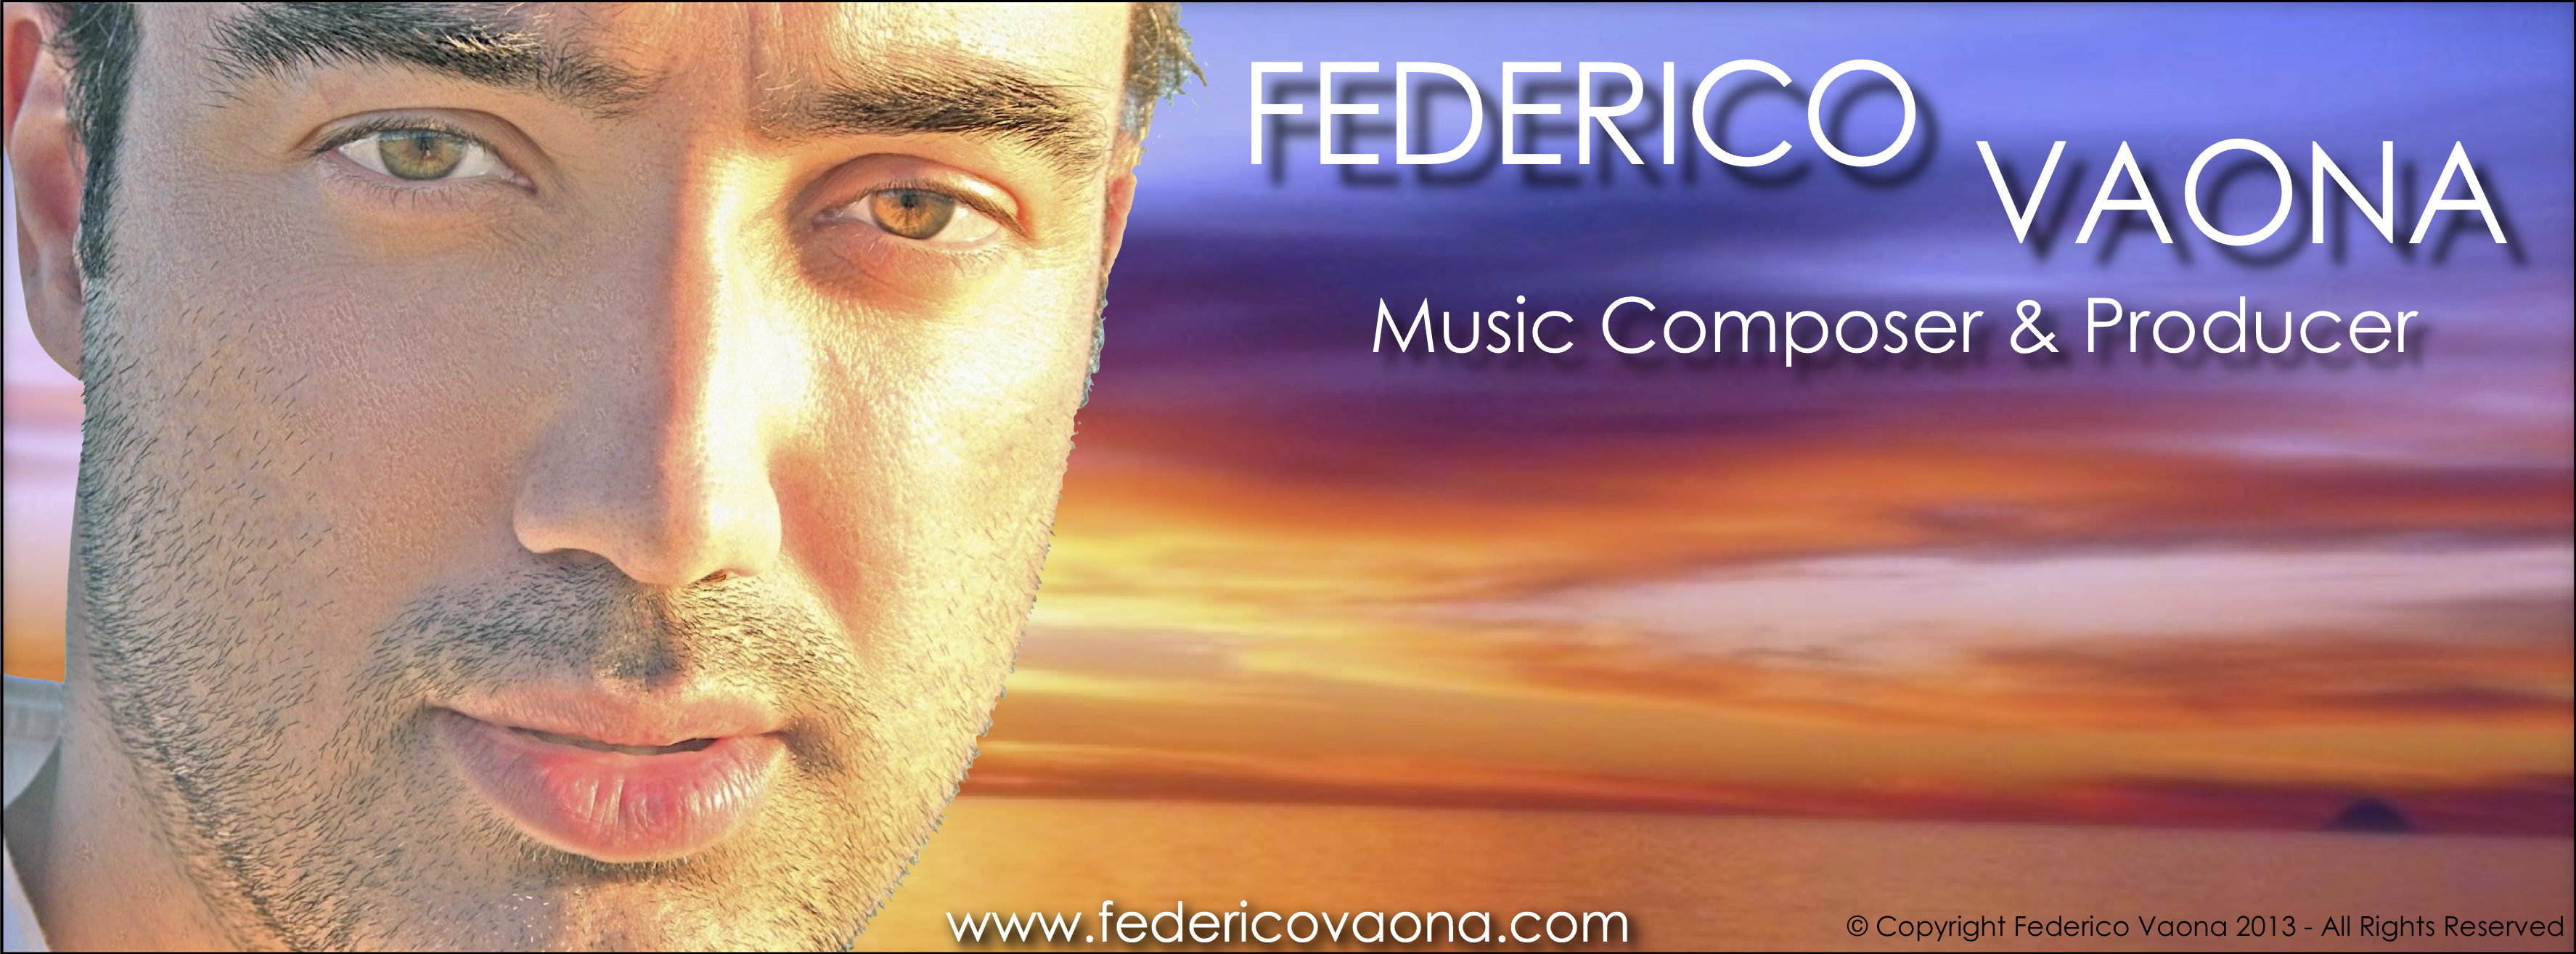 Federico Vaona Music Composer & Producer Official Logo www.federicovaona.com